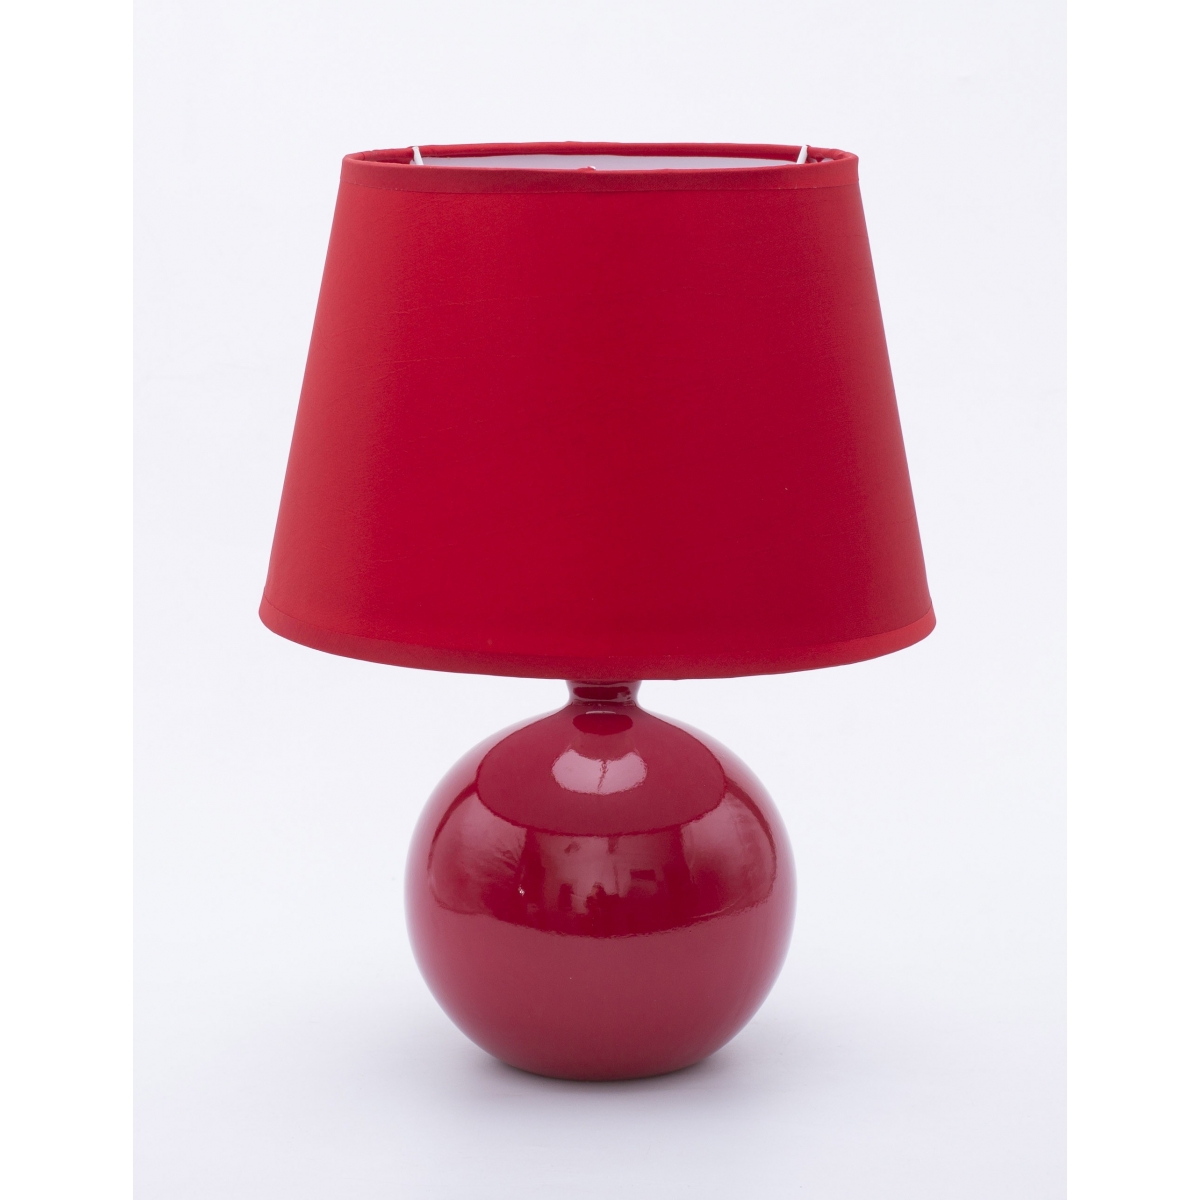 Lampka stołowa ceramiczna Ola czerwona 33756